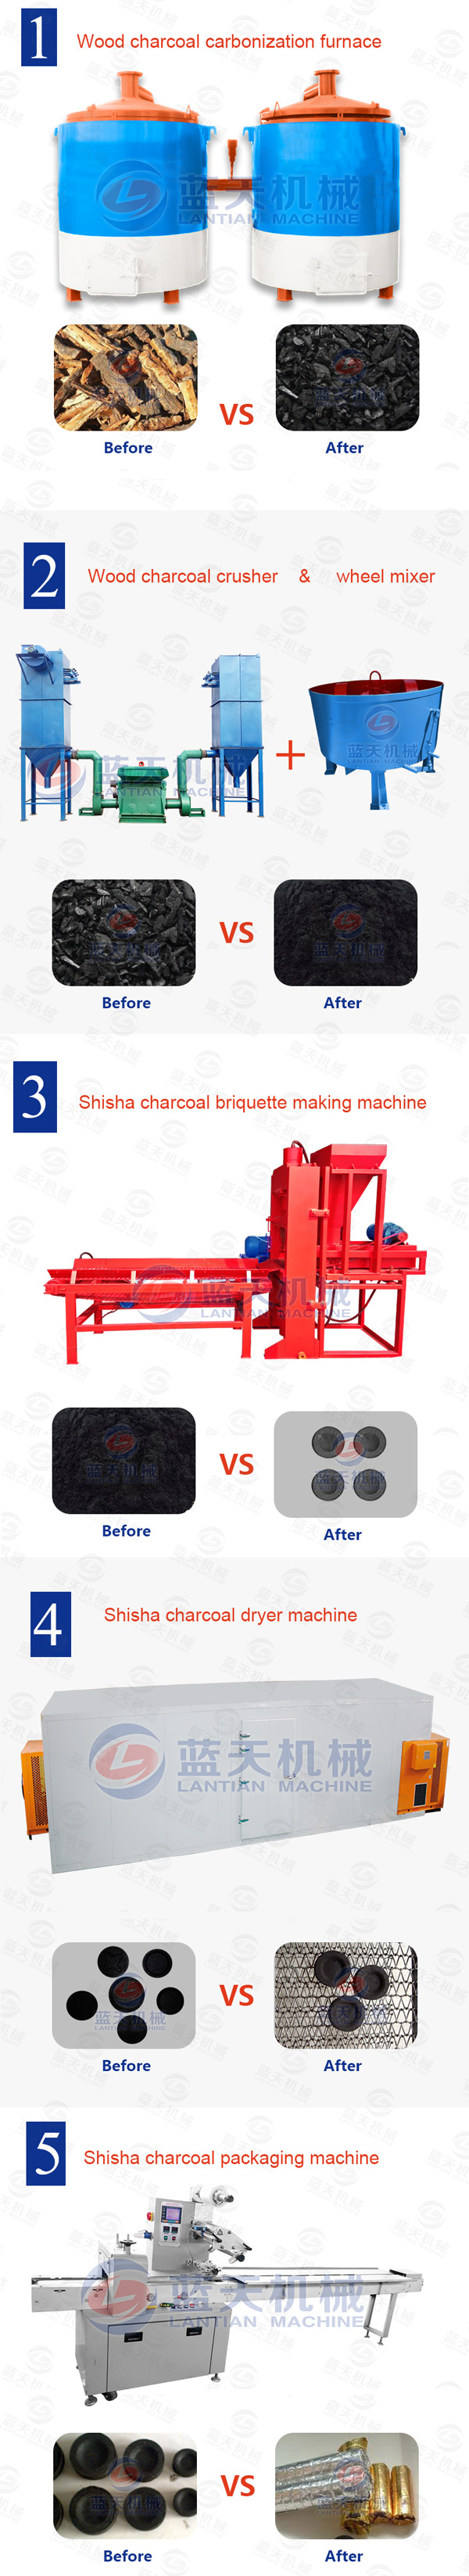 shisha charcoal briquette machine